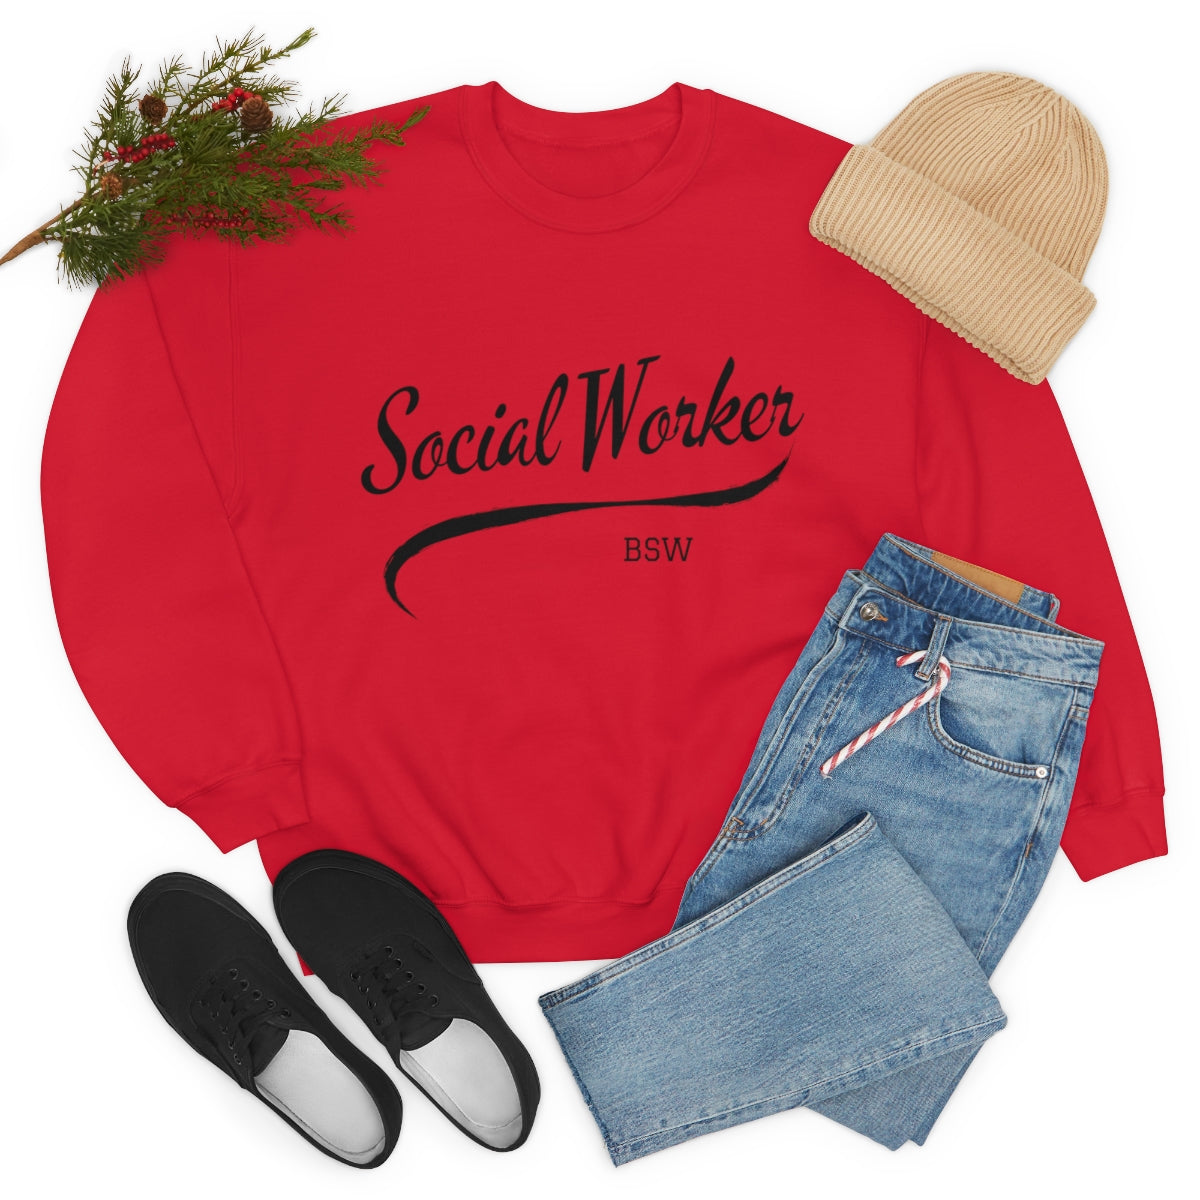 Social Worker BSW Crewneck